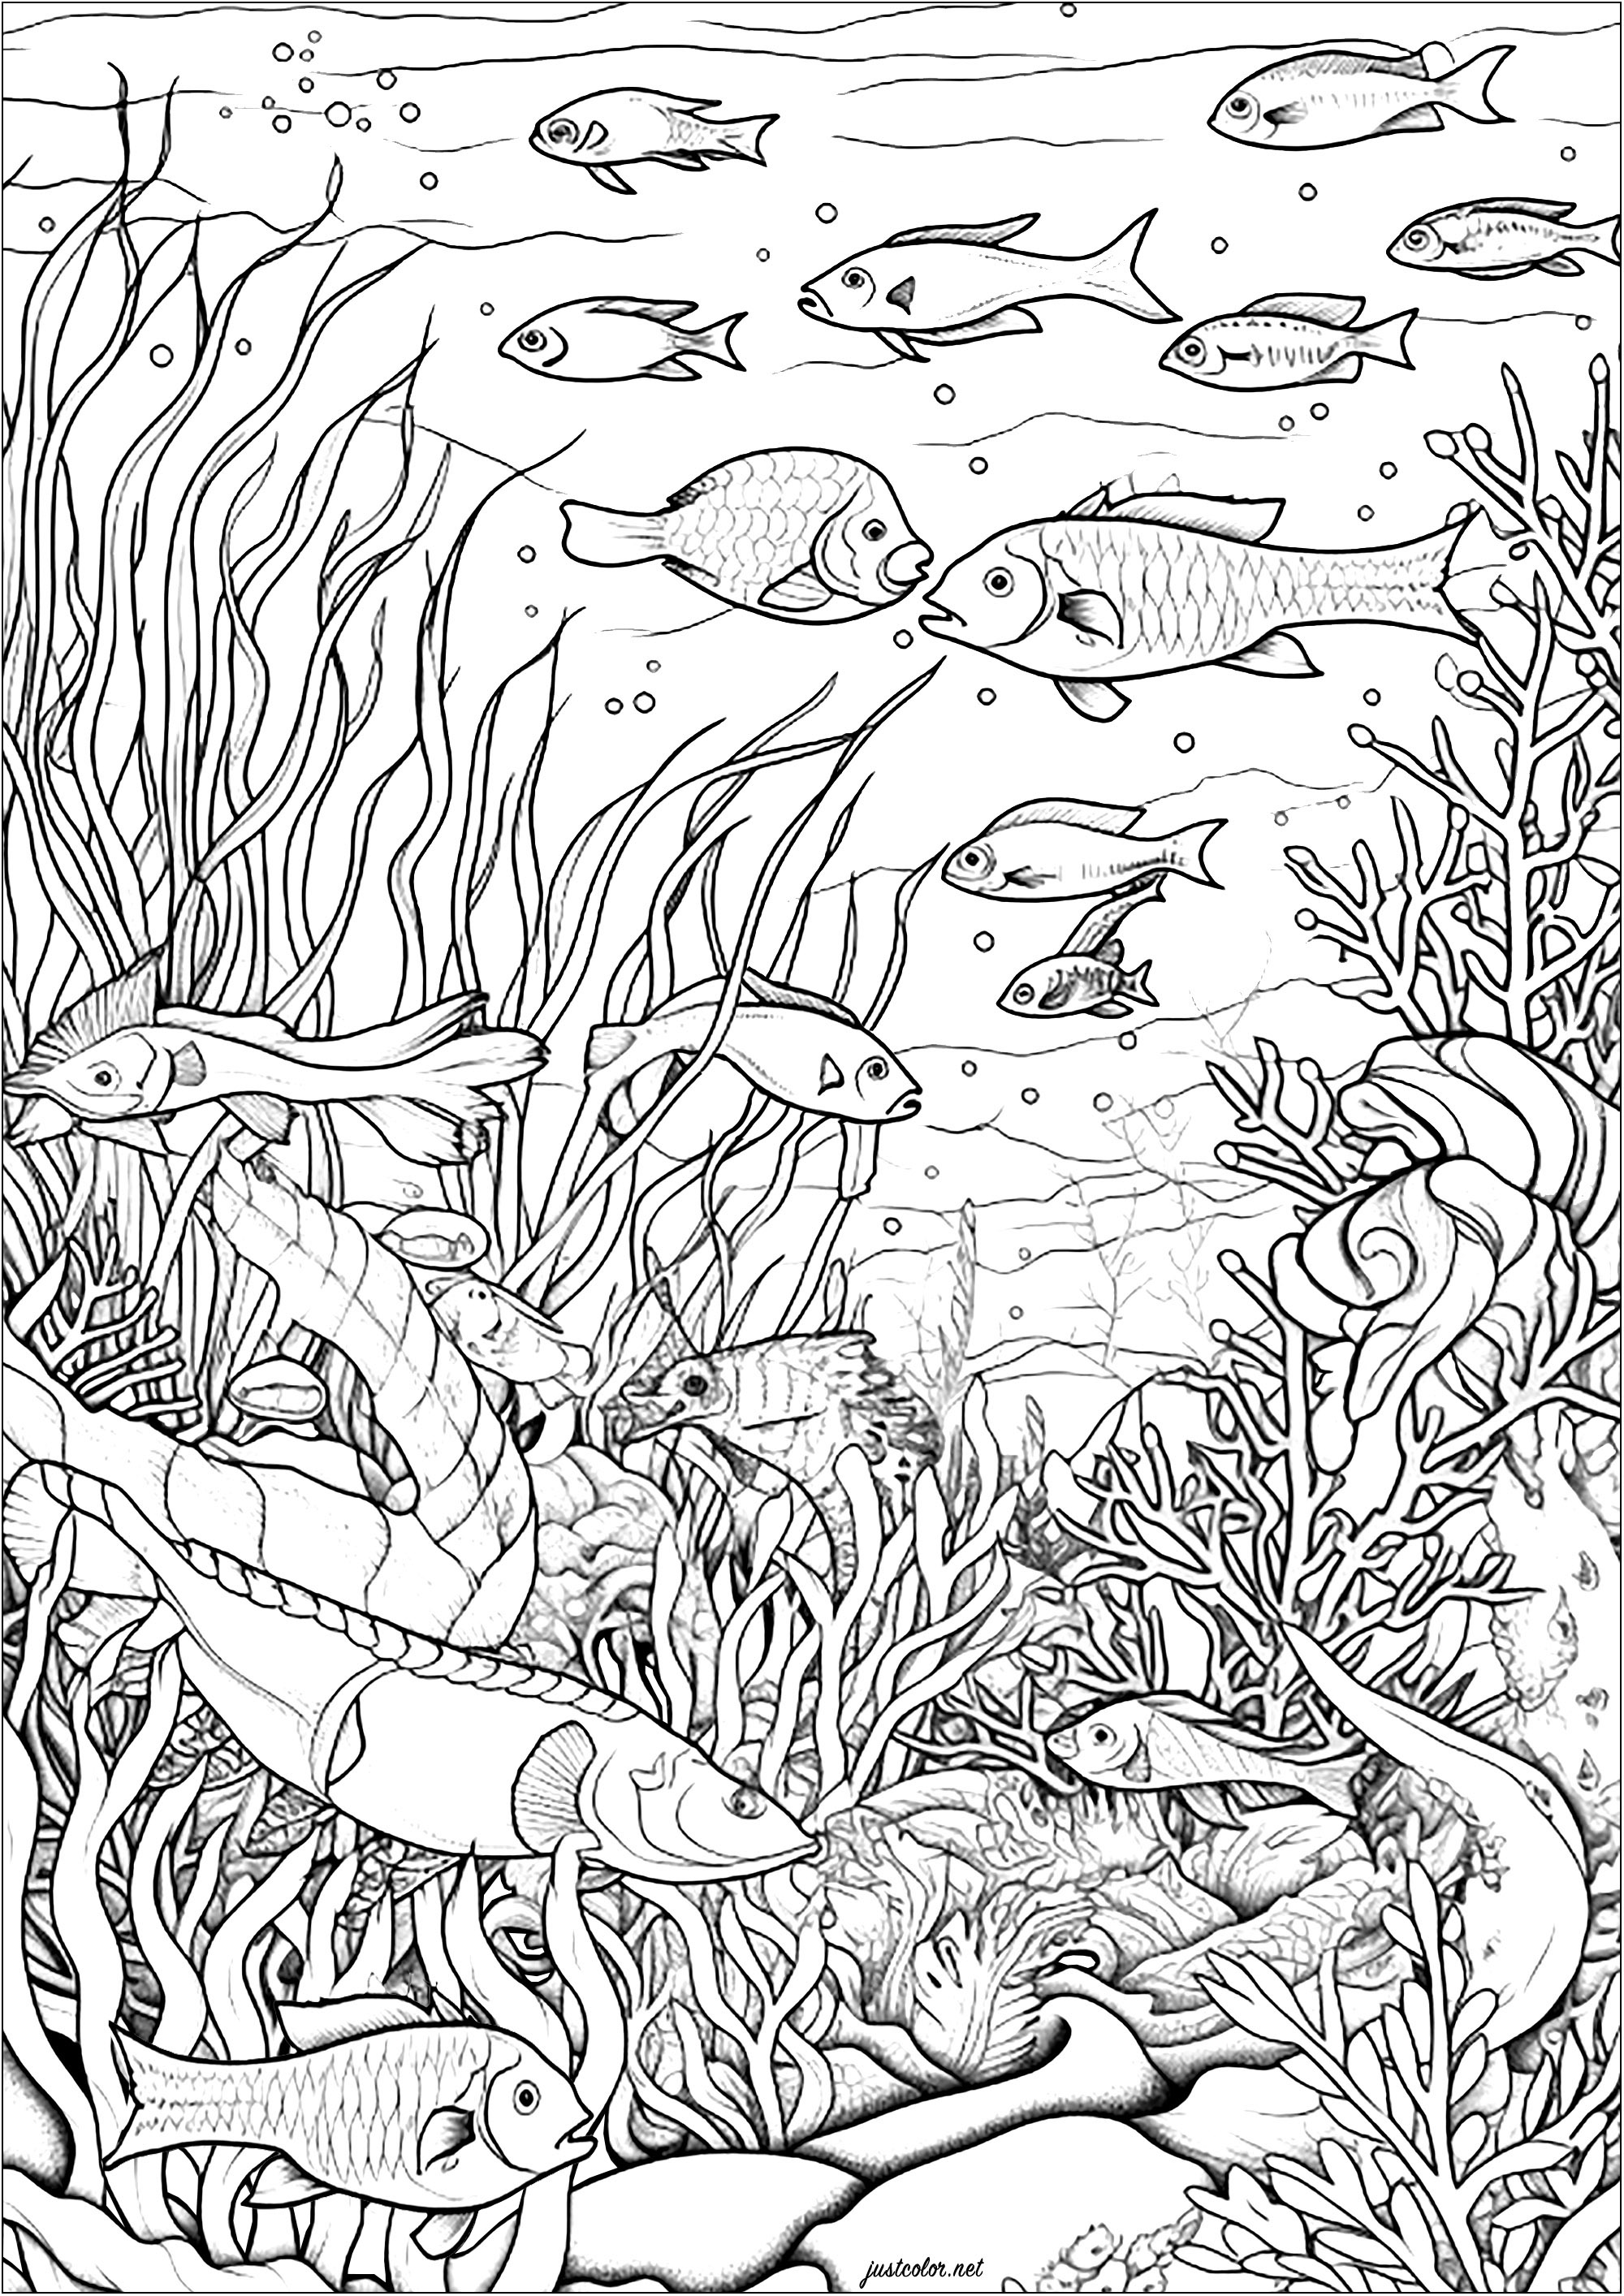 Pescado y algas. Esta página para colorear es una maravillosa pintura acuática.
Representa una escena submarina serena y relajante.
Puedes ver muchos peces nadando en el fondo marino lleno de algas.